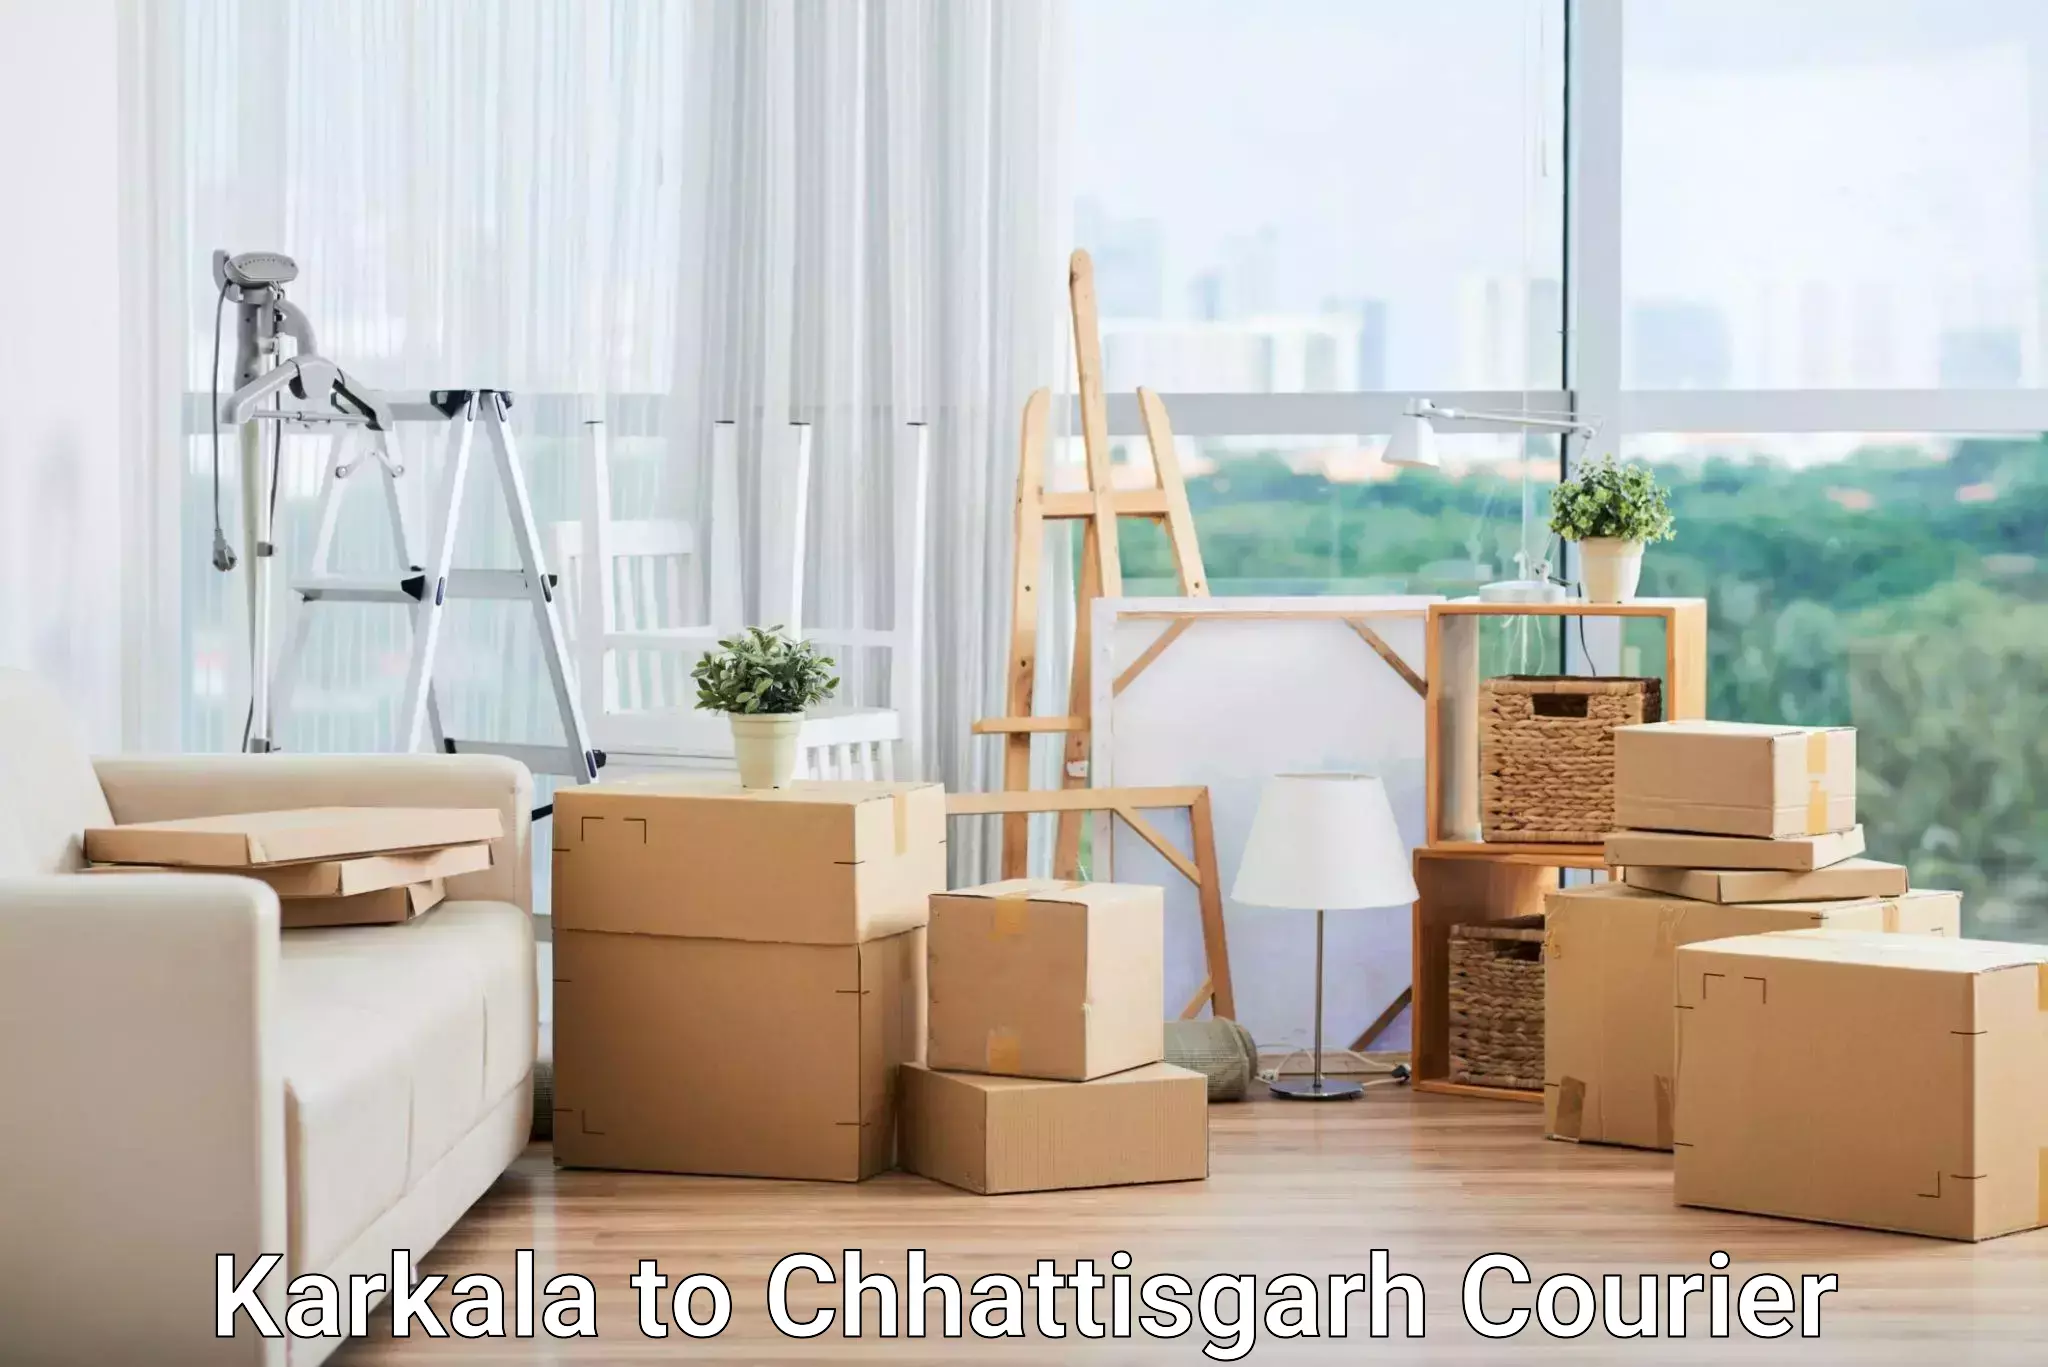 International courier networks Karkala to Chhattisgarh